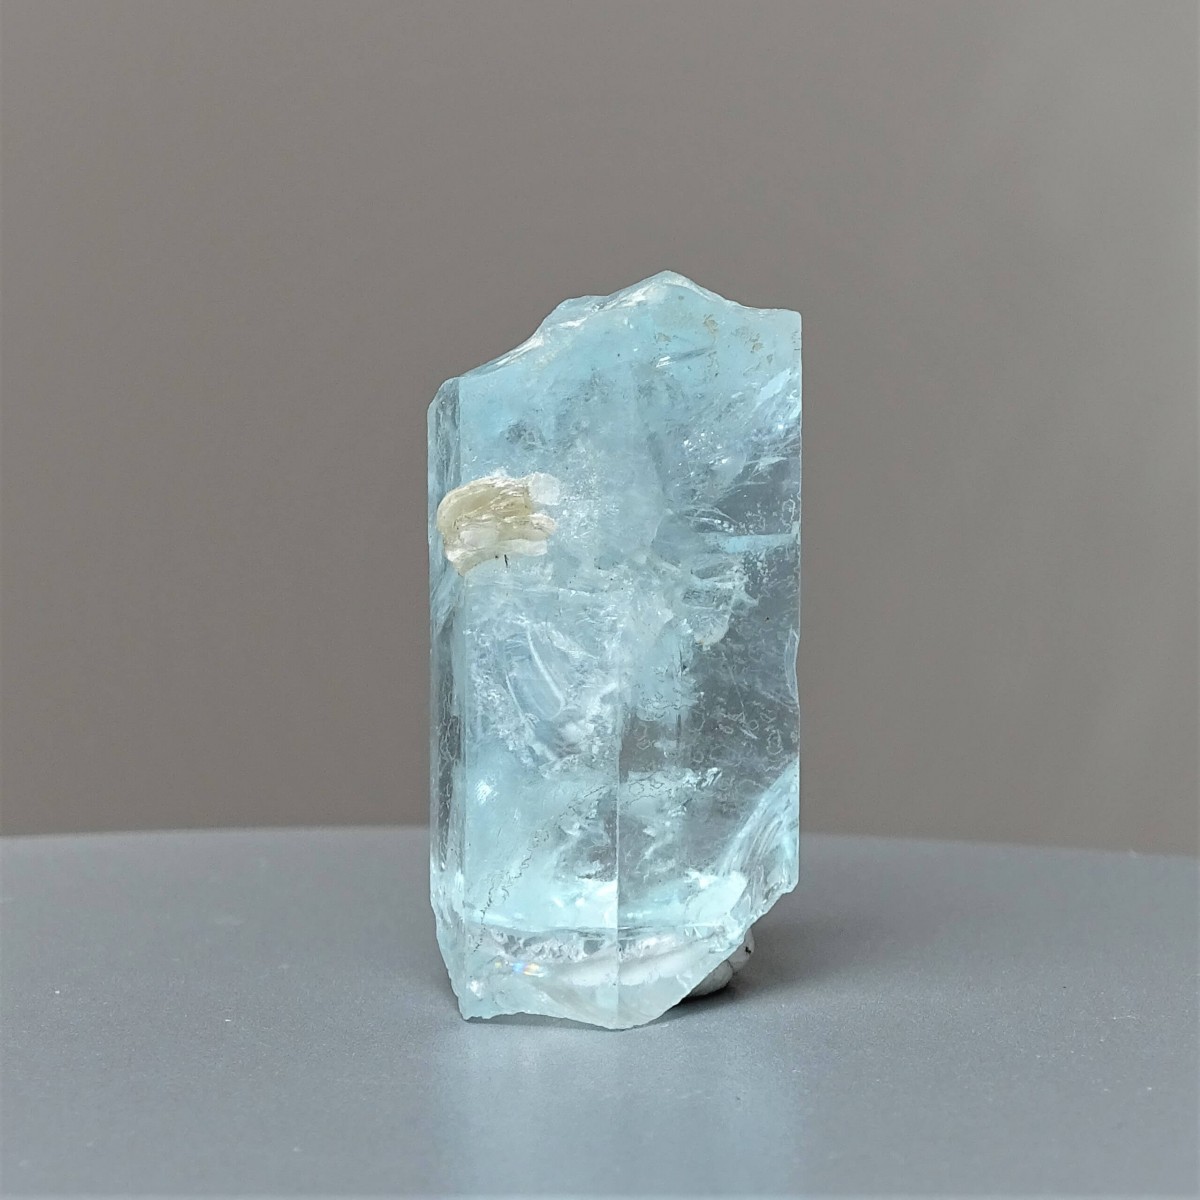 Akvamarín přírodní krystal 35,6g, Pakistán